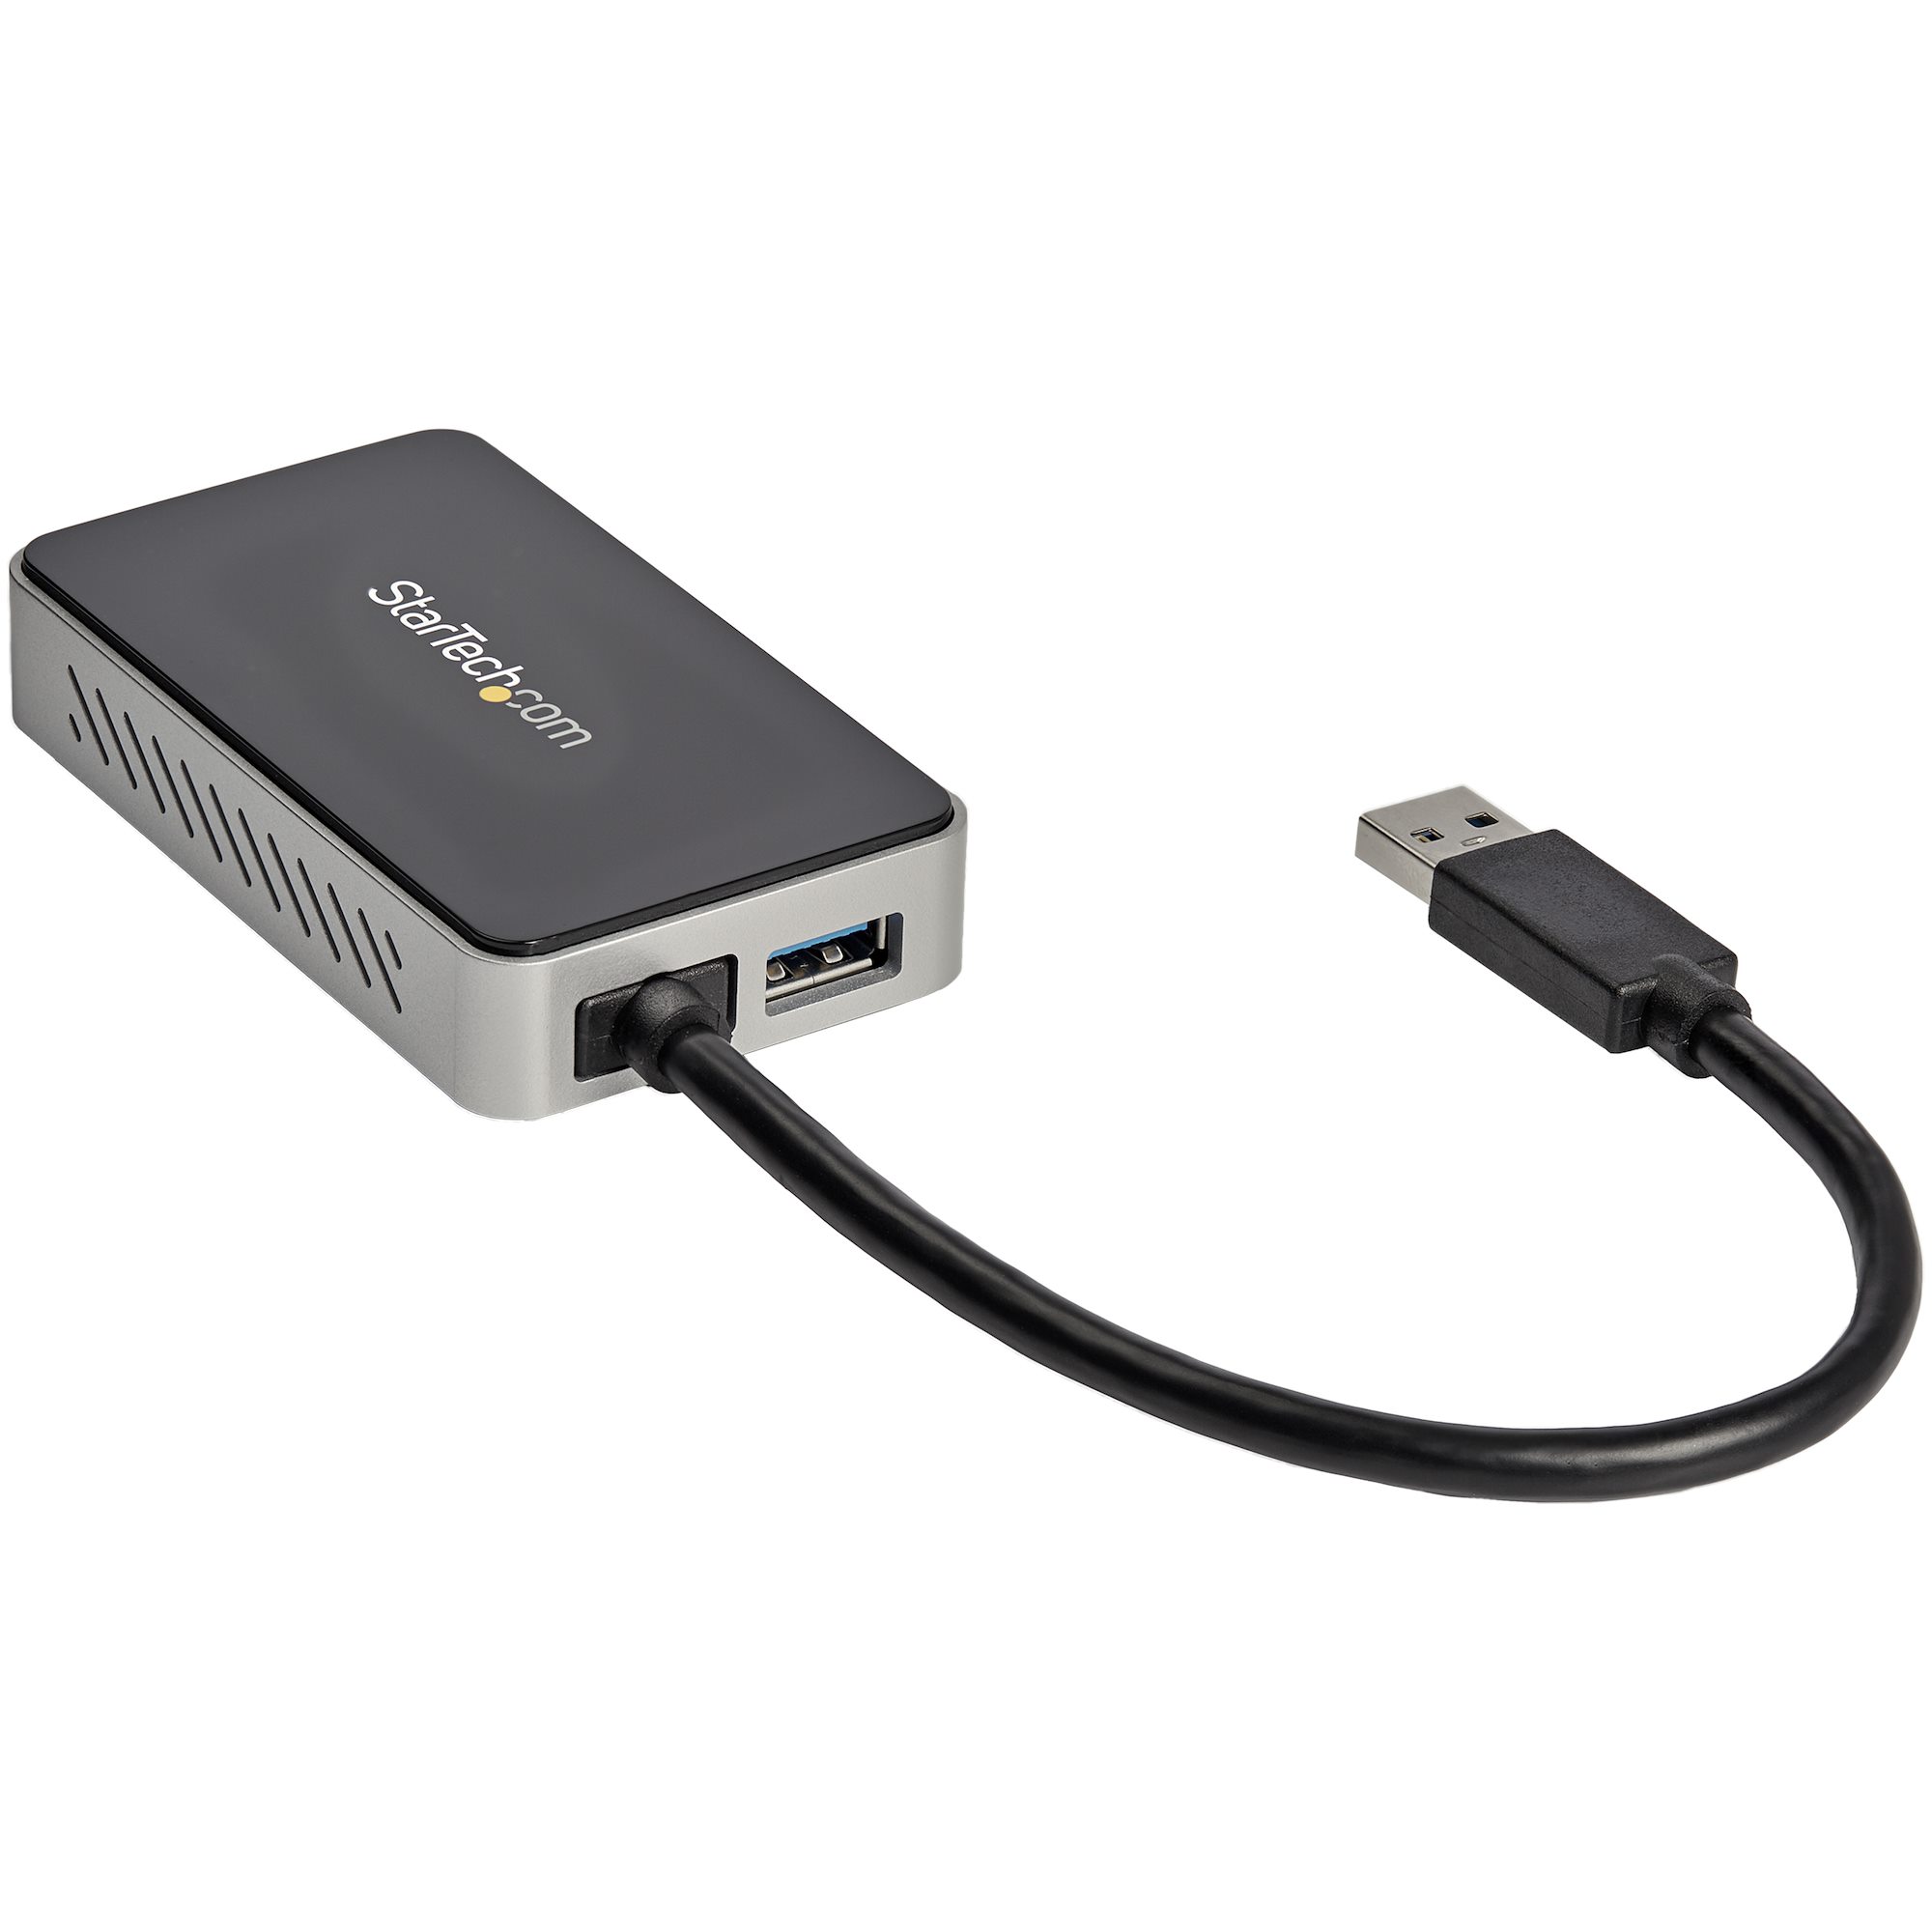 Adapter, USB 3.0 to DVI + 1-Port USB Hub - USB Video Adapters